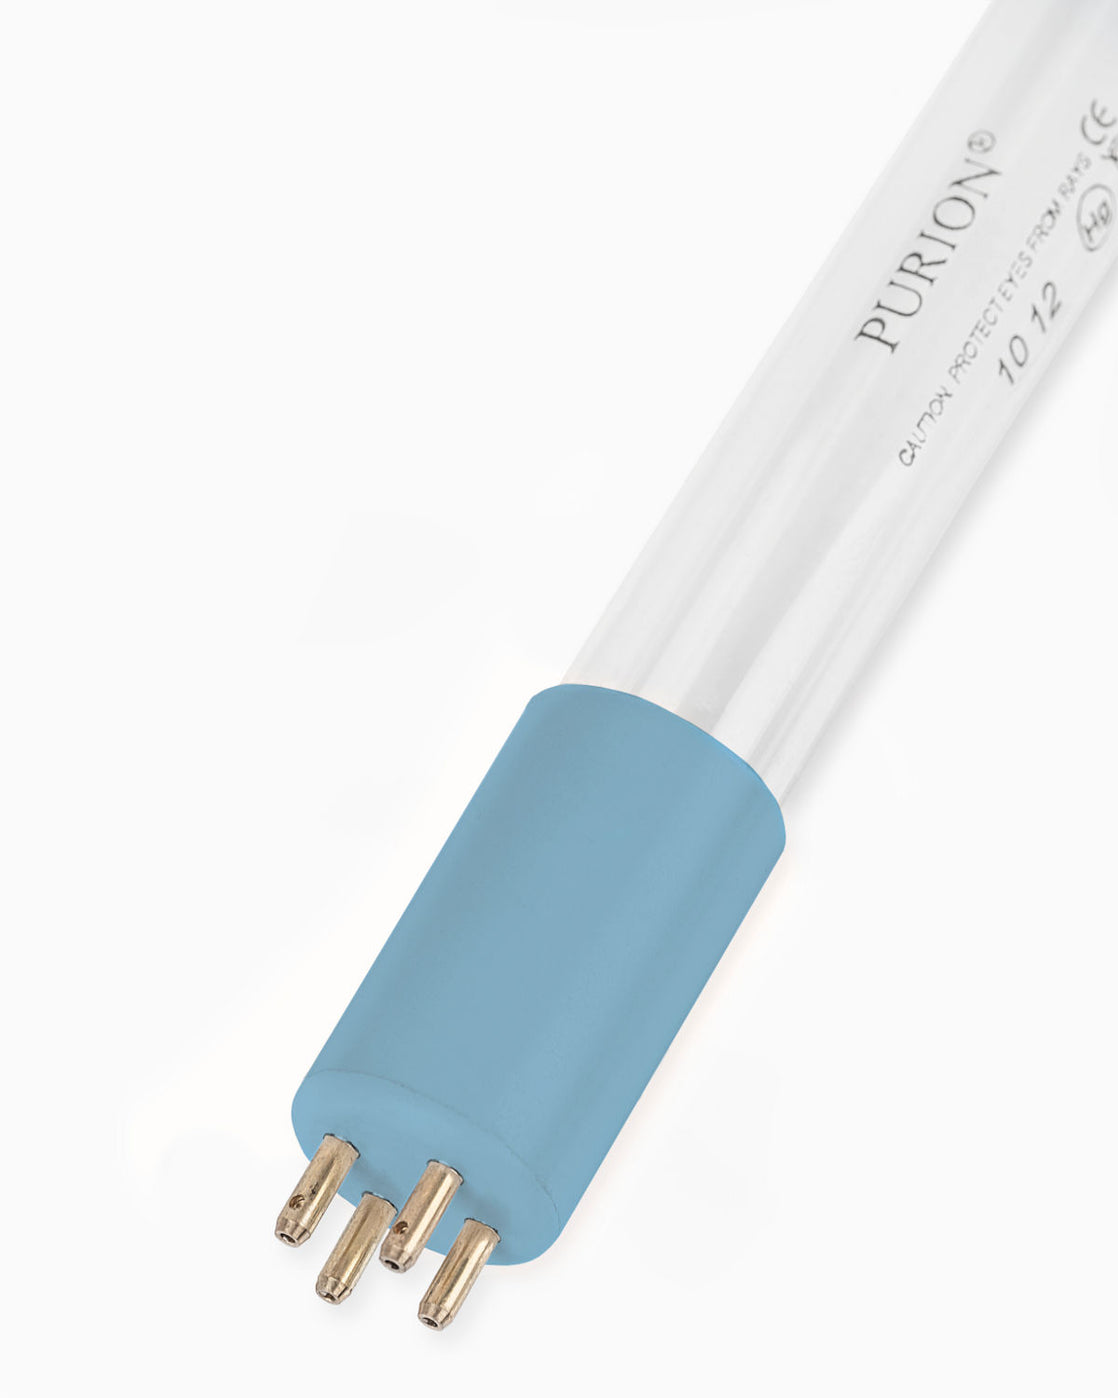 Eine blaue PURION UVC-Lampe 90 W Röhre auf weißem Hintergrund, mit garantierter Betriebsdauer und 90 Watt Leistung.